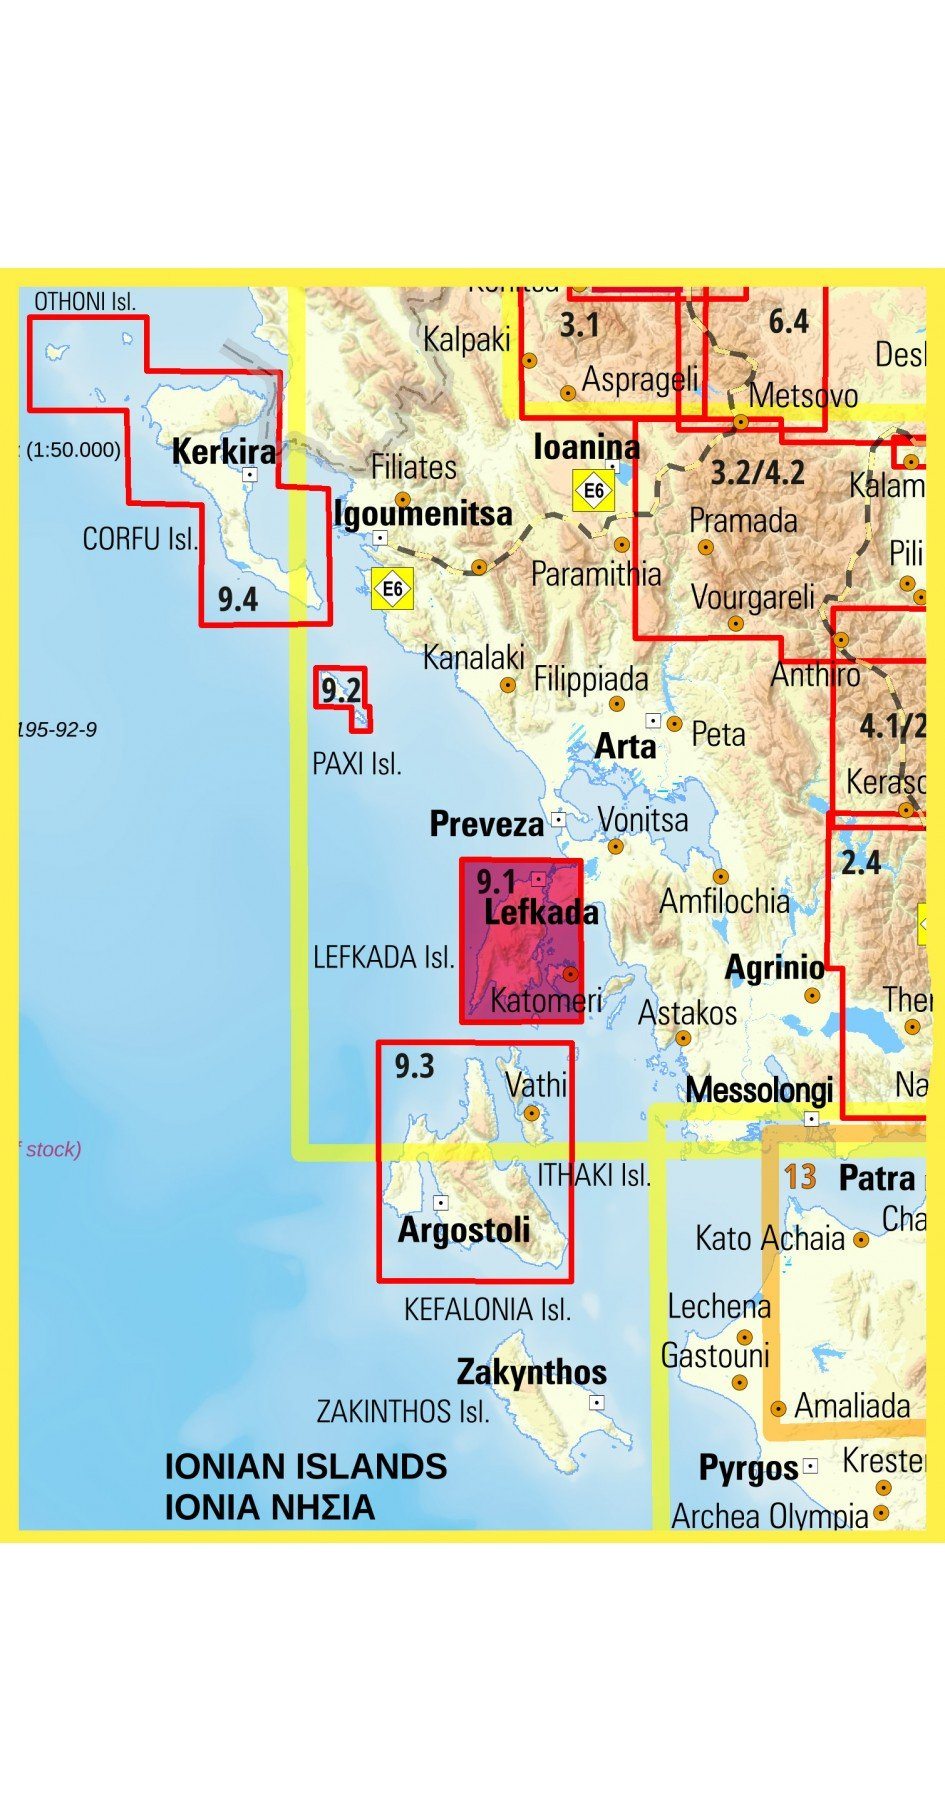 Carte de randonnée - îles de Lefkada & Meganisi | Anavasi carte pliée Anavasi 